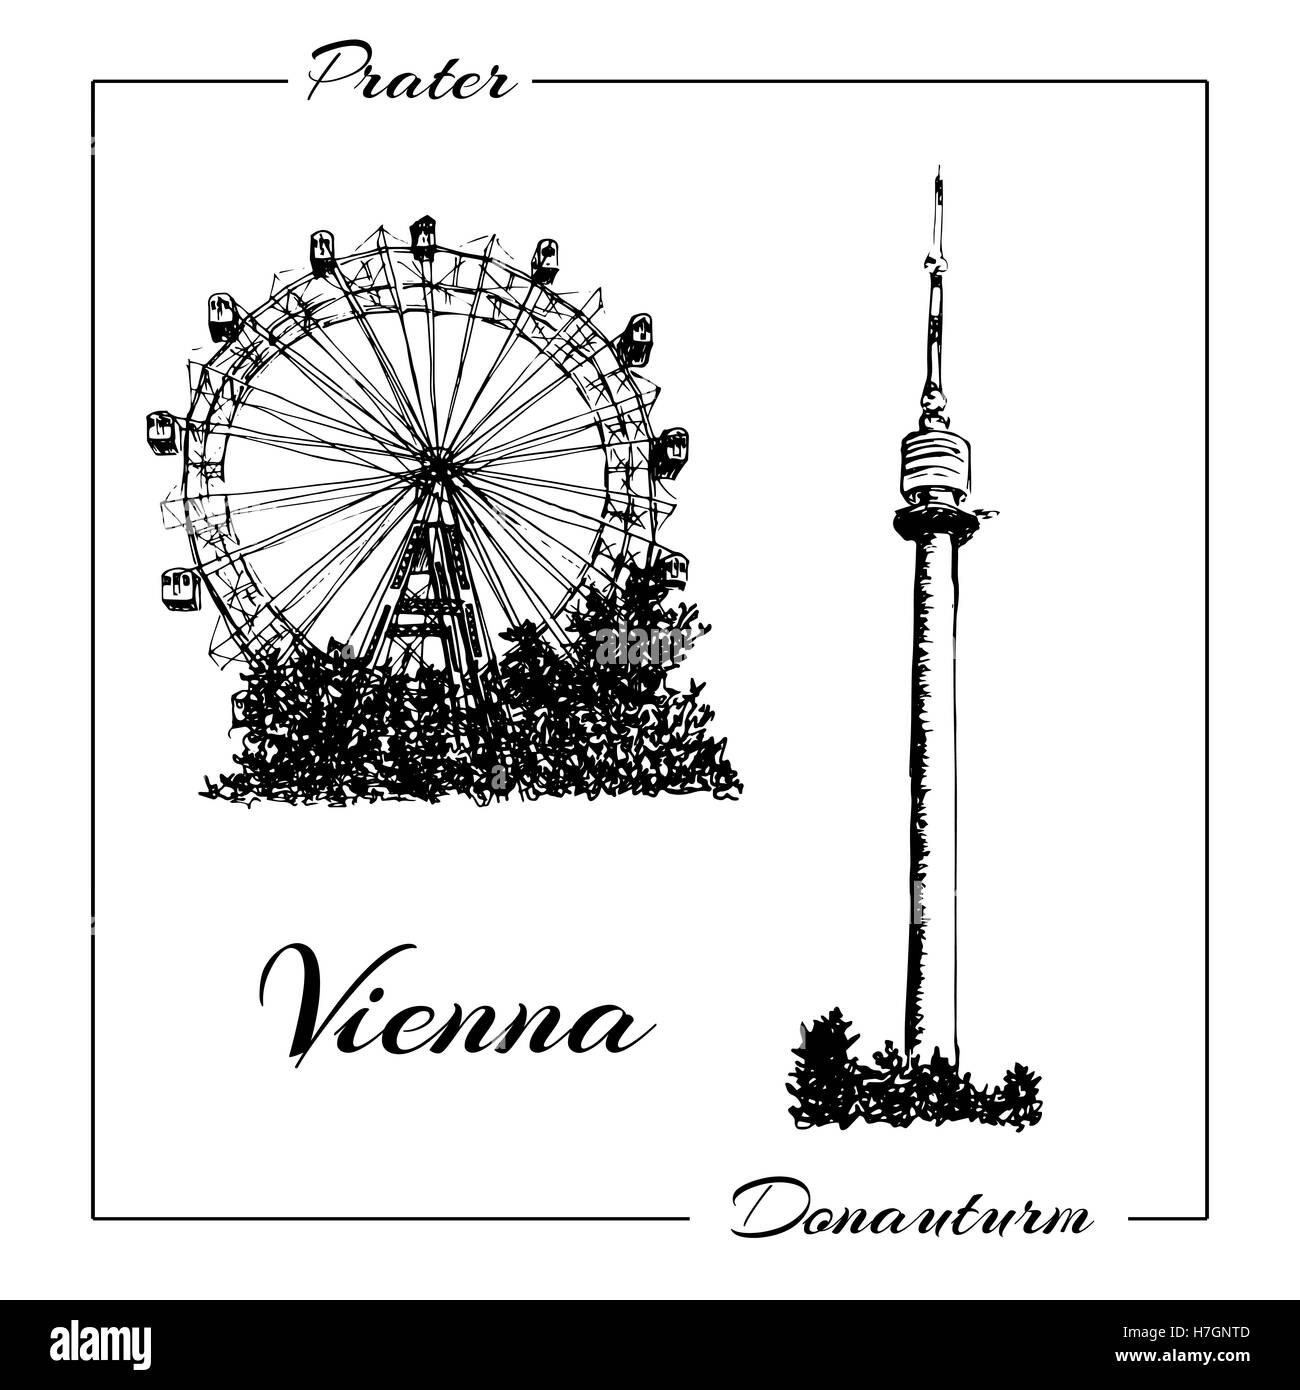 Wiener Prater und Donauturm. Handgezeichnete Skizze Vektorgrafik. kann verwendet werden, Werbung, Postkarten, Drucke Stockfoto